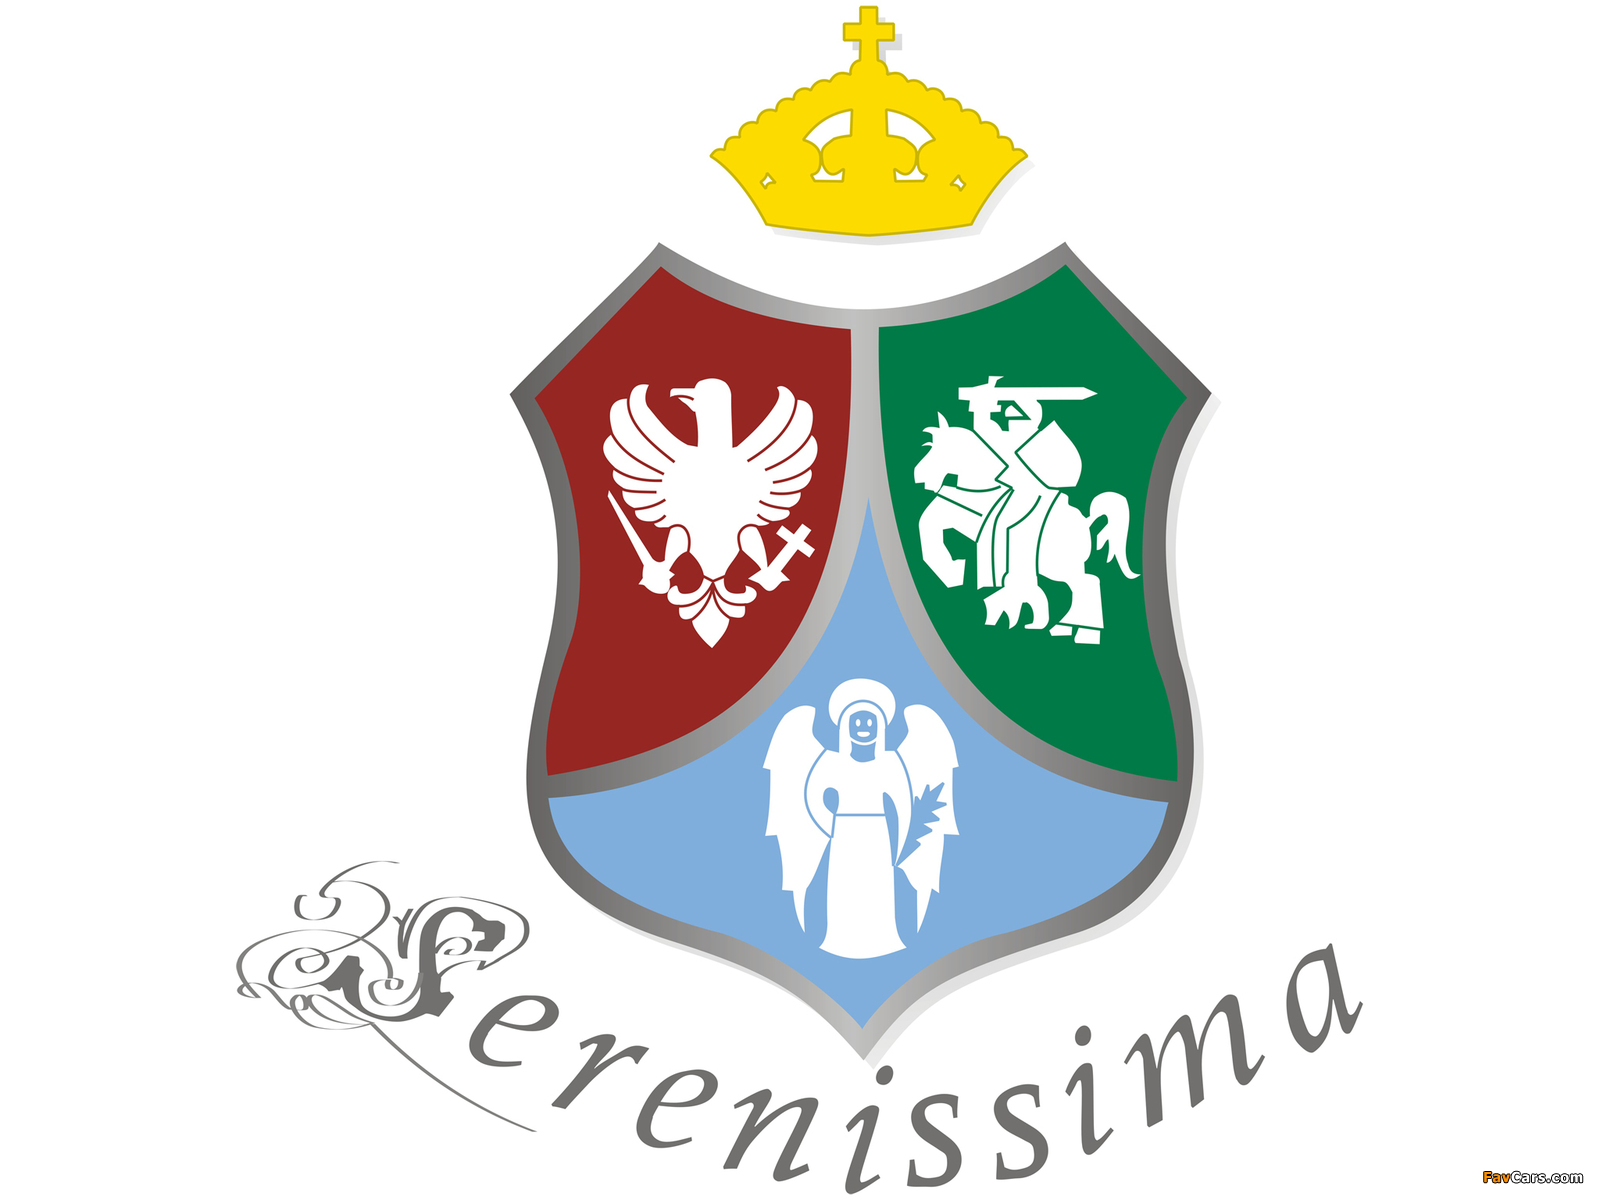 Serenissima images (1600 x 1200)